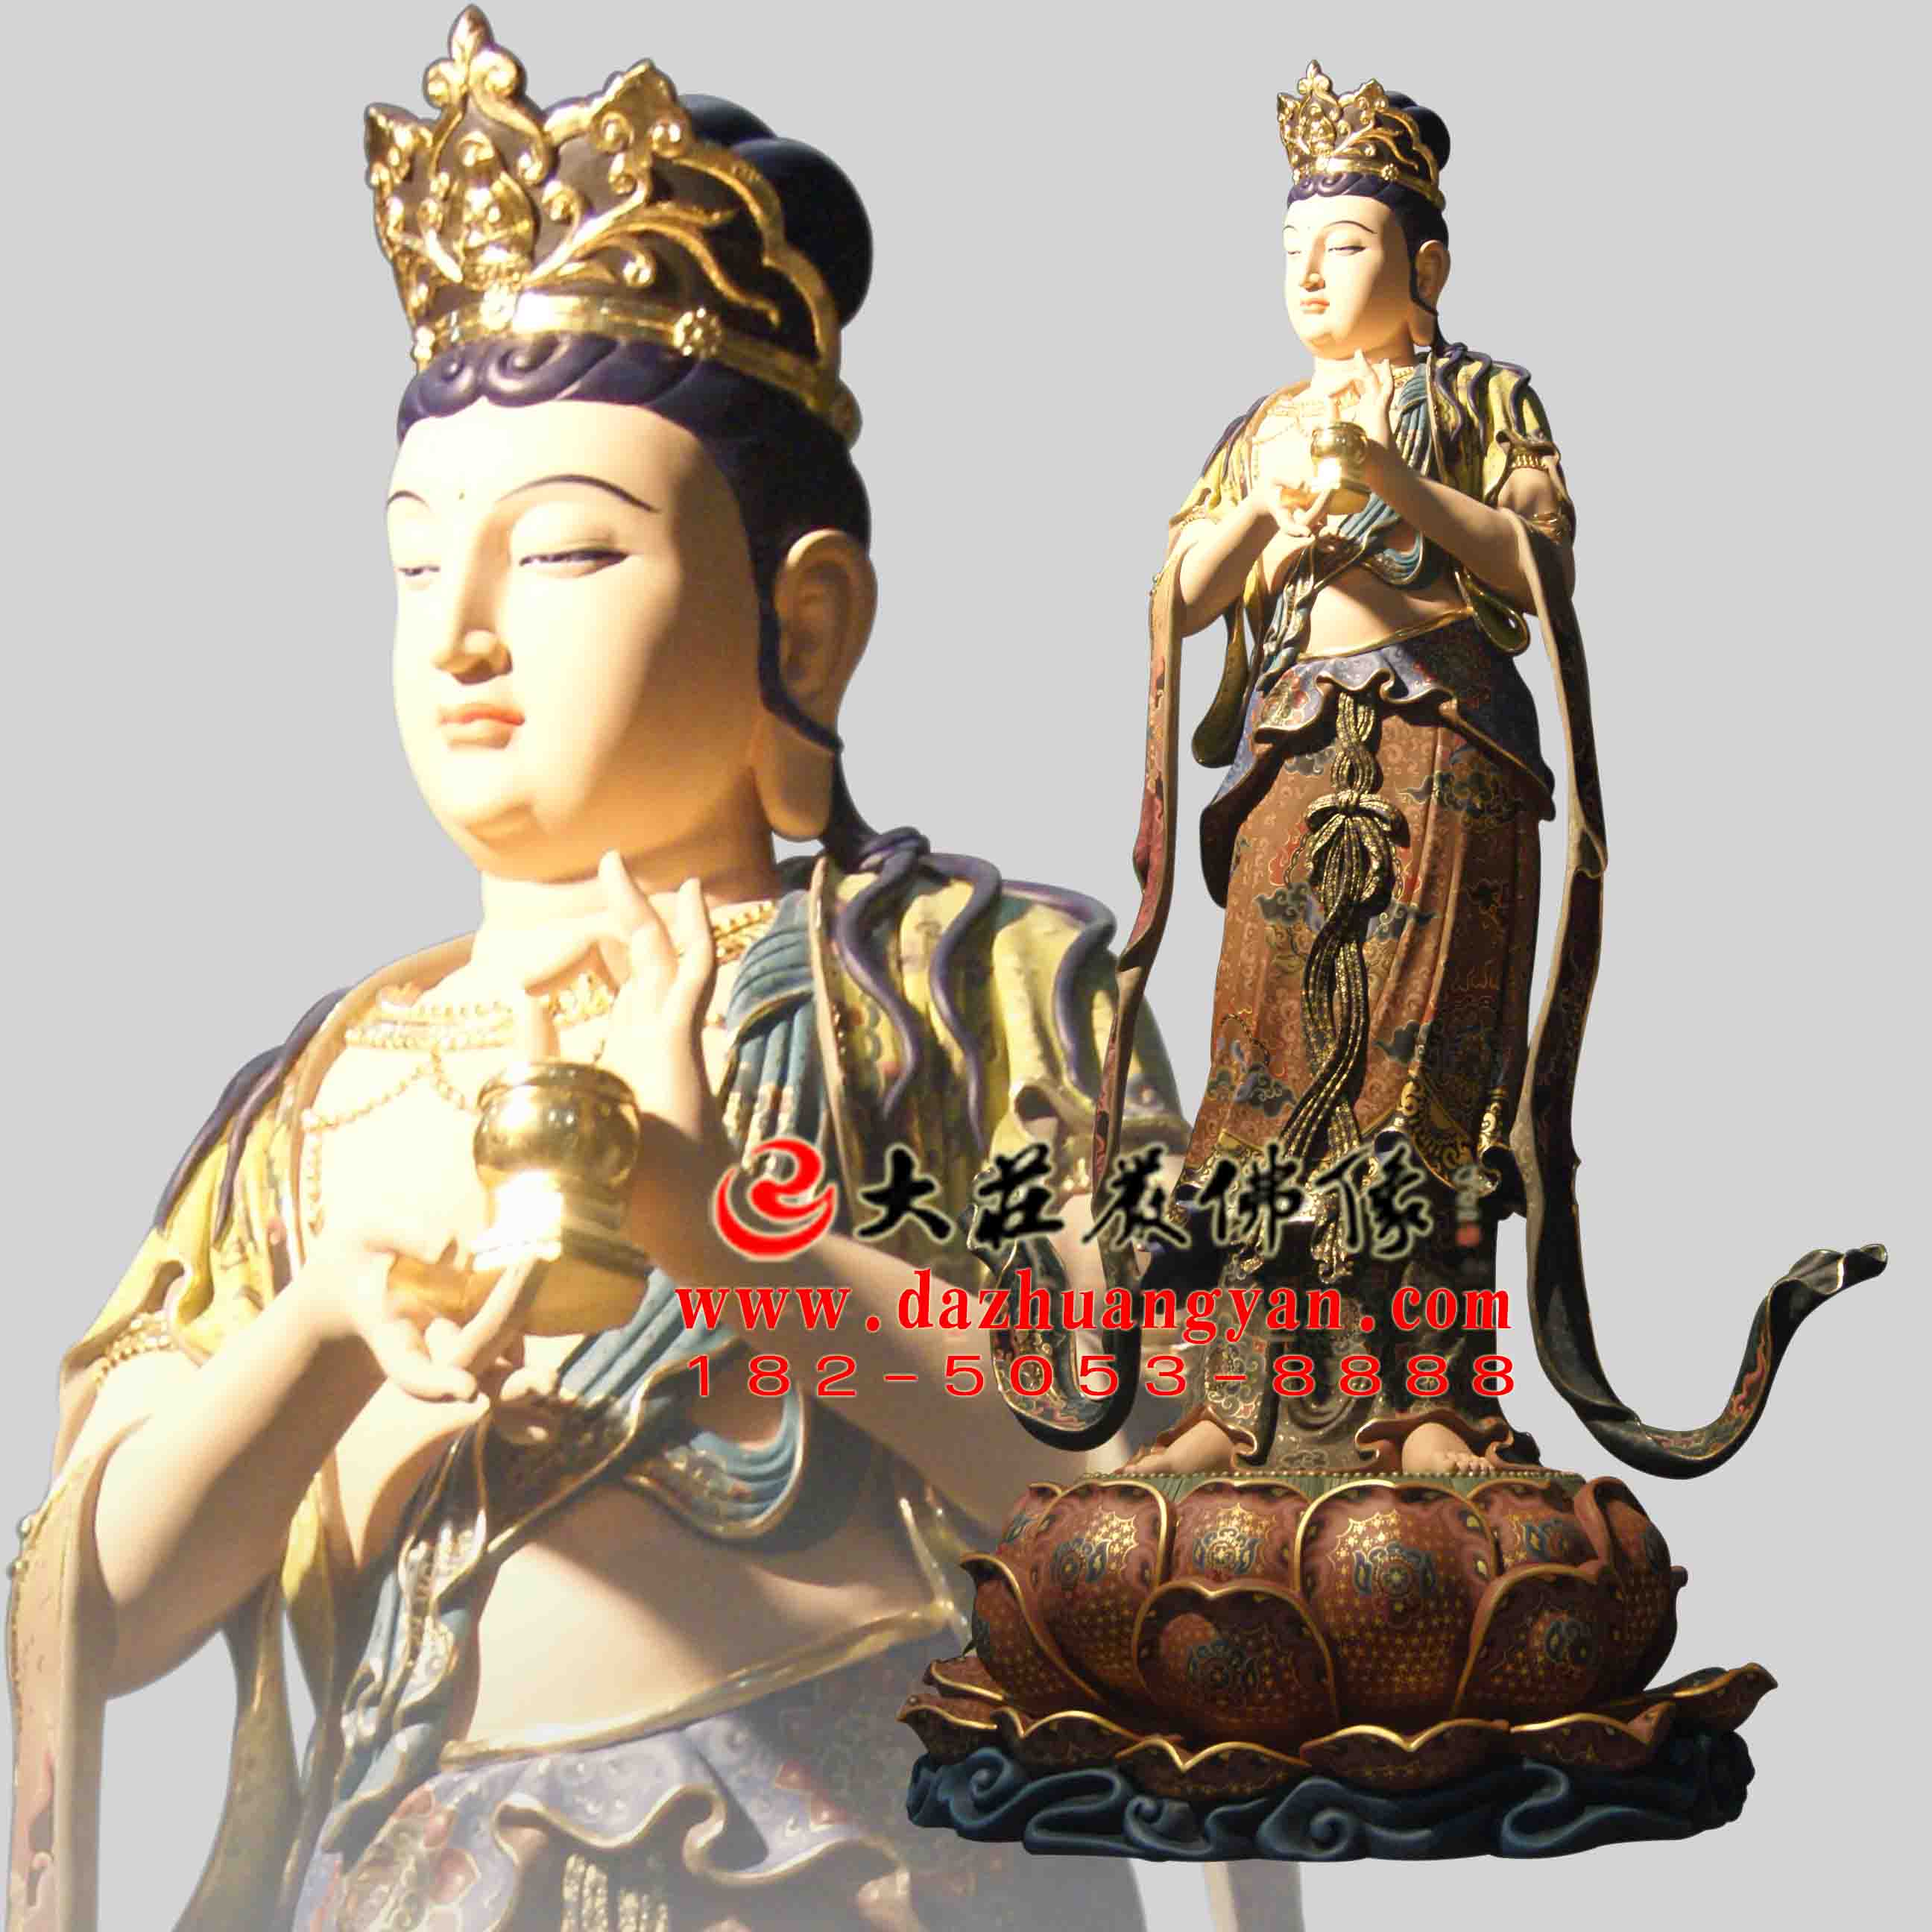 生漆脱胎八大菩萨之地藏菩萨彩绘佛像侧面像